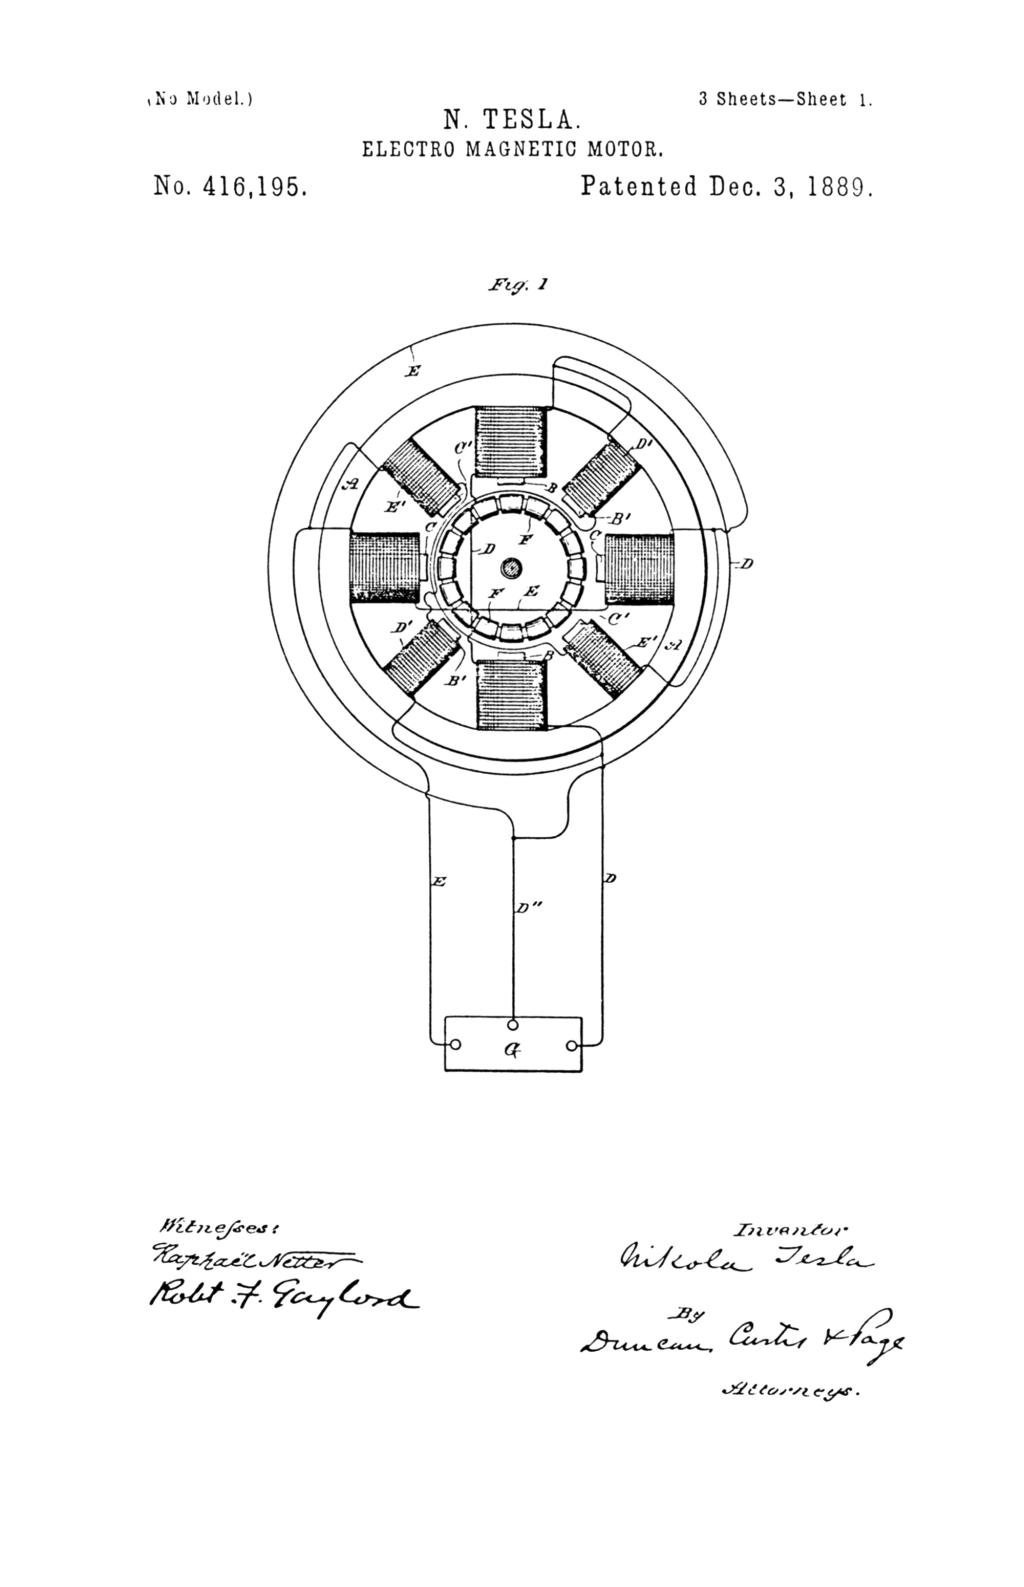 Nikola Tesla U.S. Patent 416,195 - Electro-Magnetic Motor - Image 1